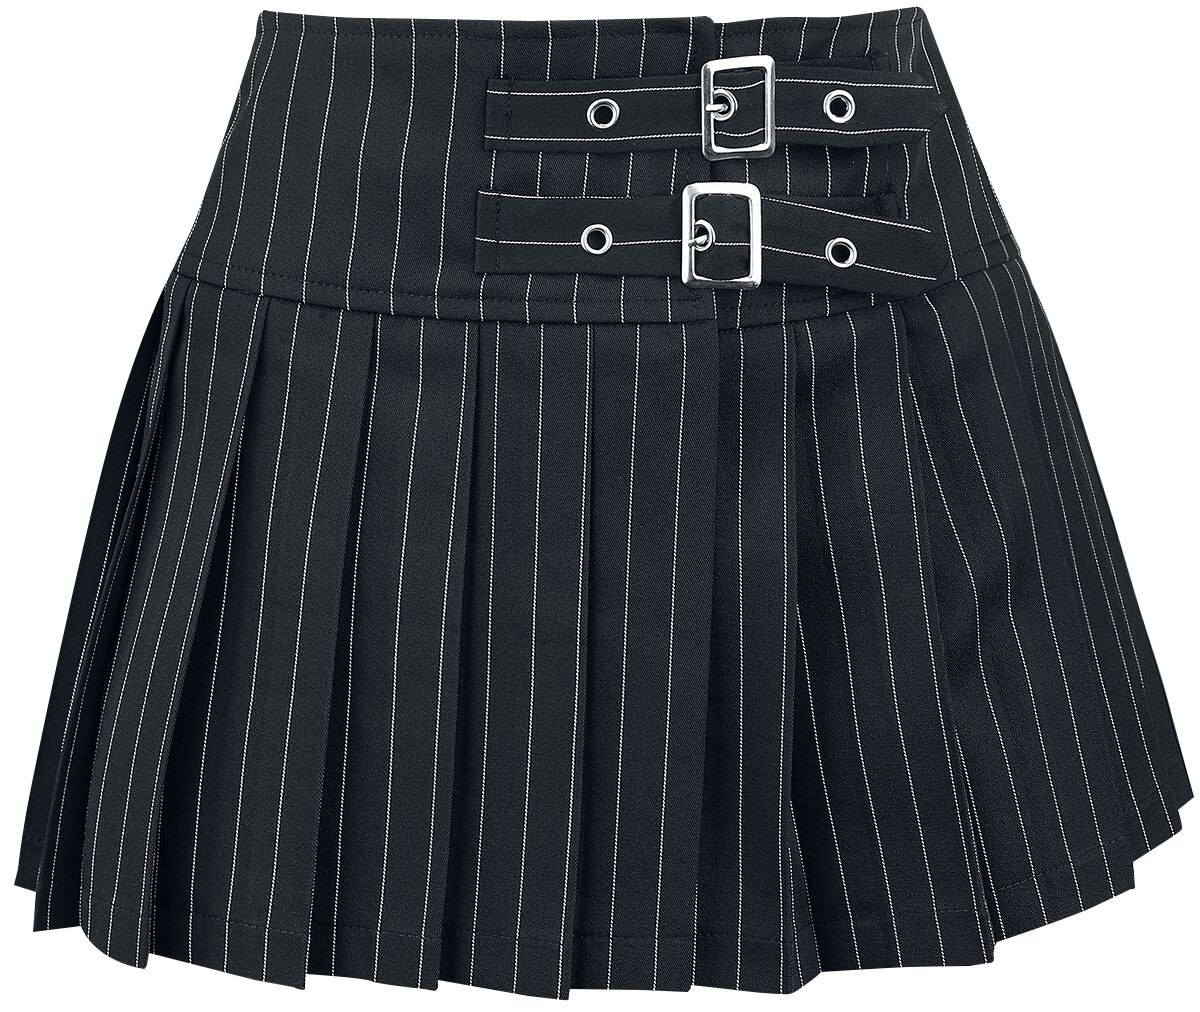 Banned Alternative - Gothic Kurzer Rock - Sisterhood Skirt - XS bis XL - für Damen - Größe S - schwarz/weiß